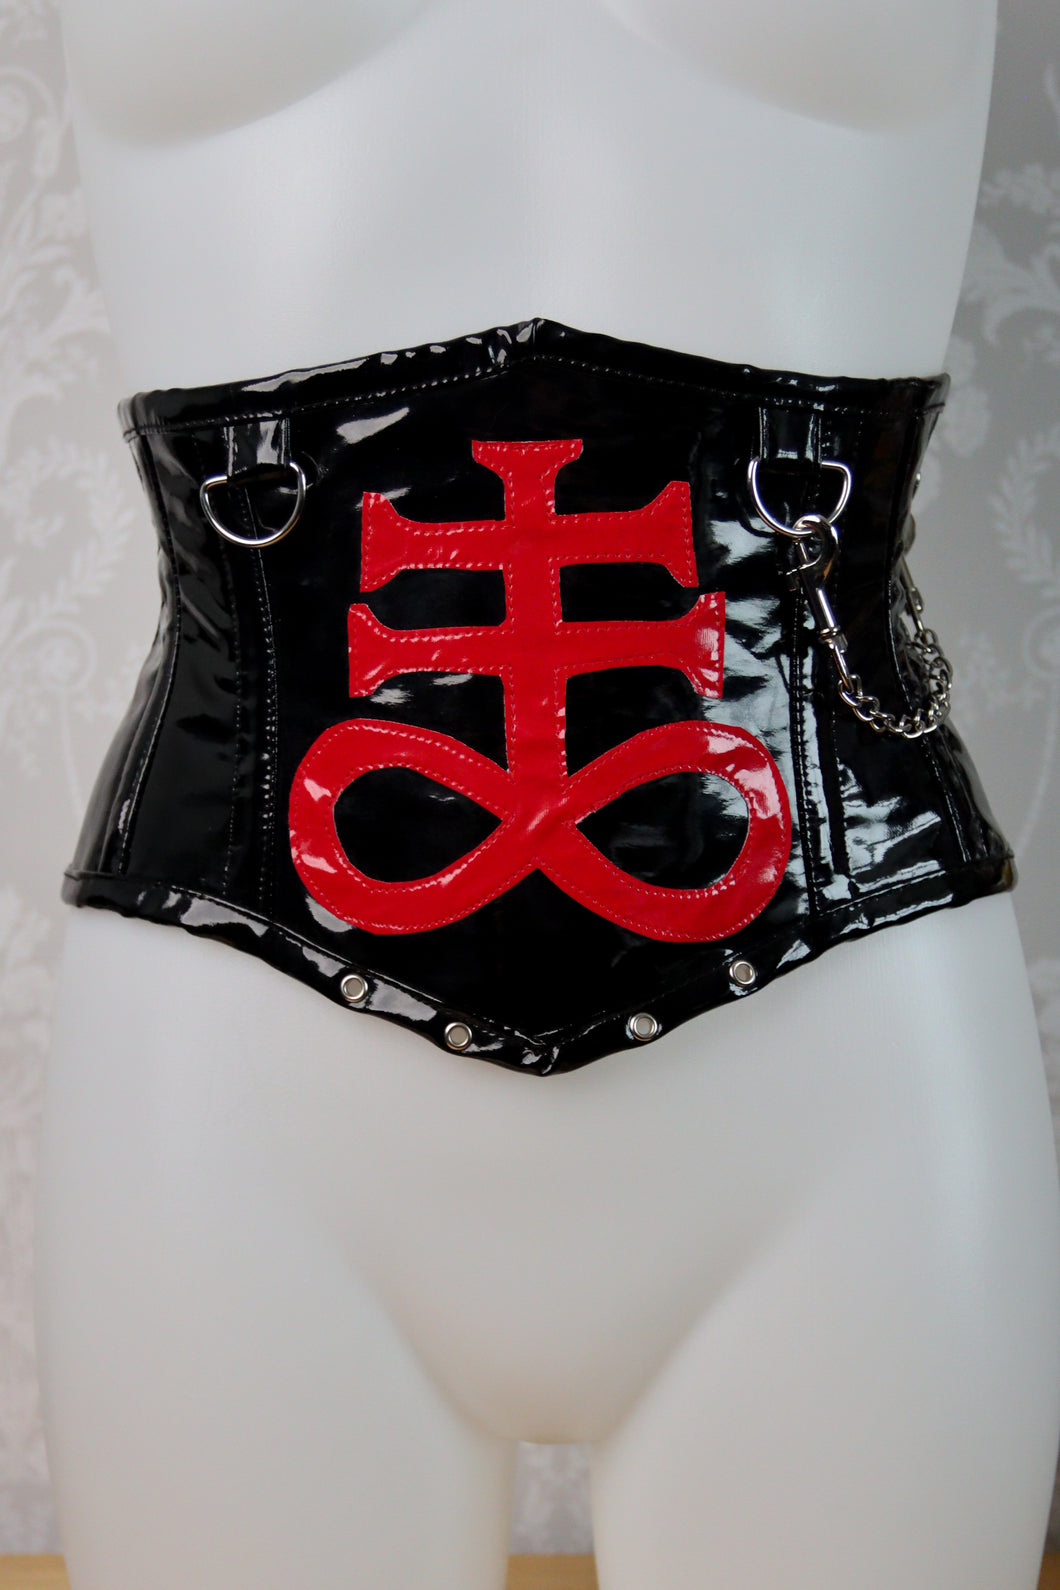 PVC Satanic corset